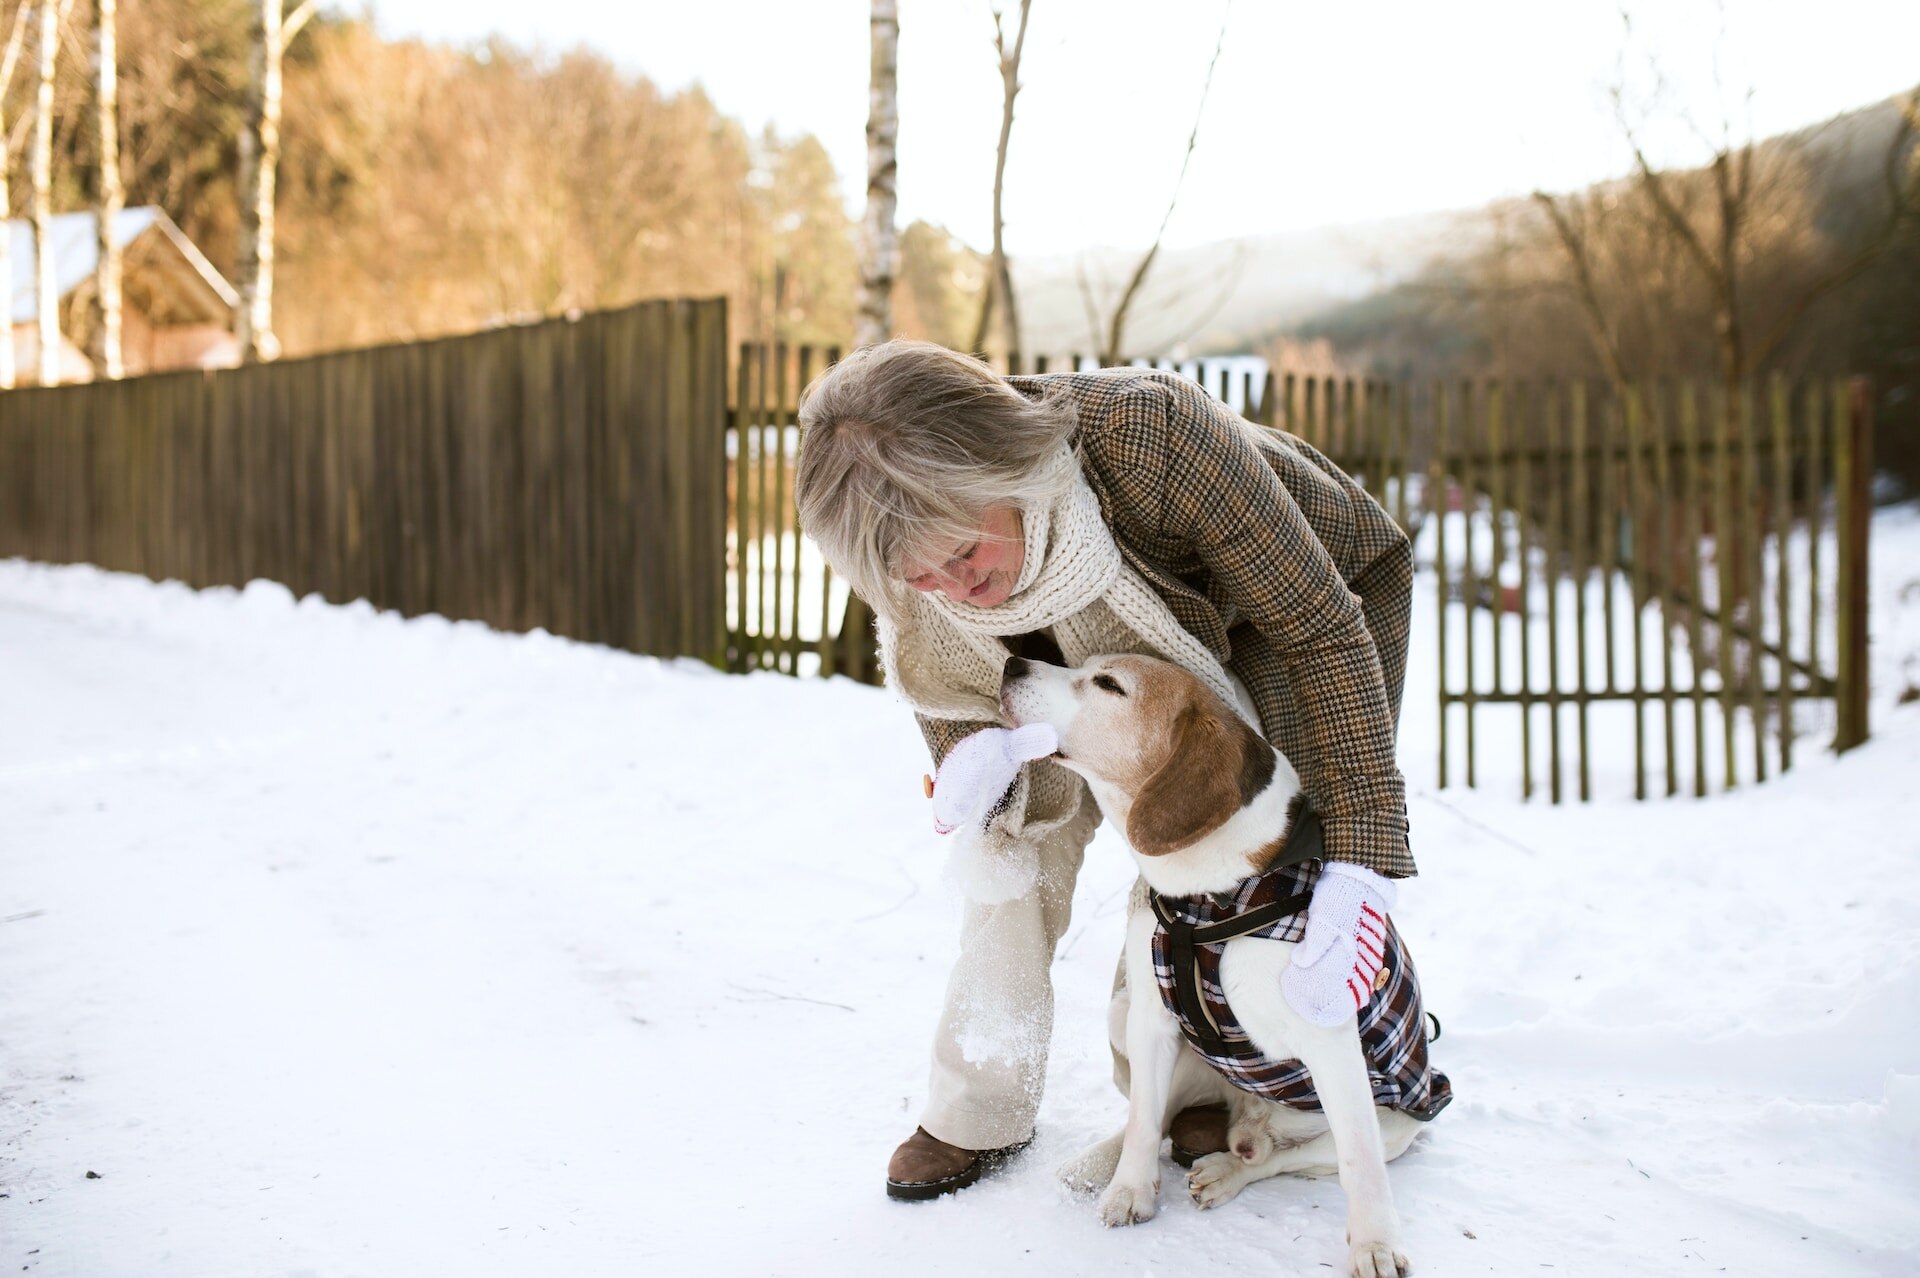 En kvinne leker med en hund ute i snøen i en inngjerdet bakgård